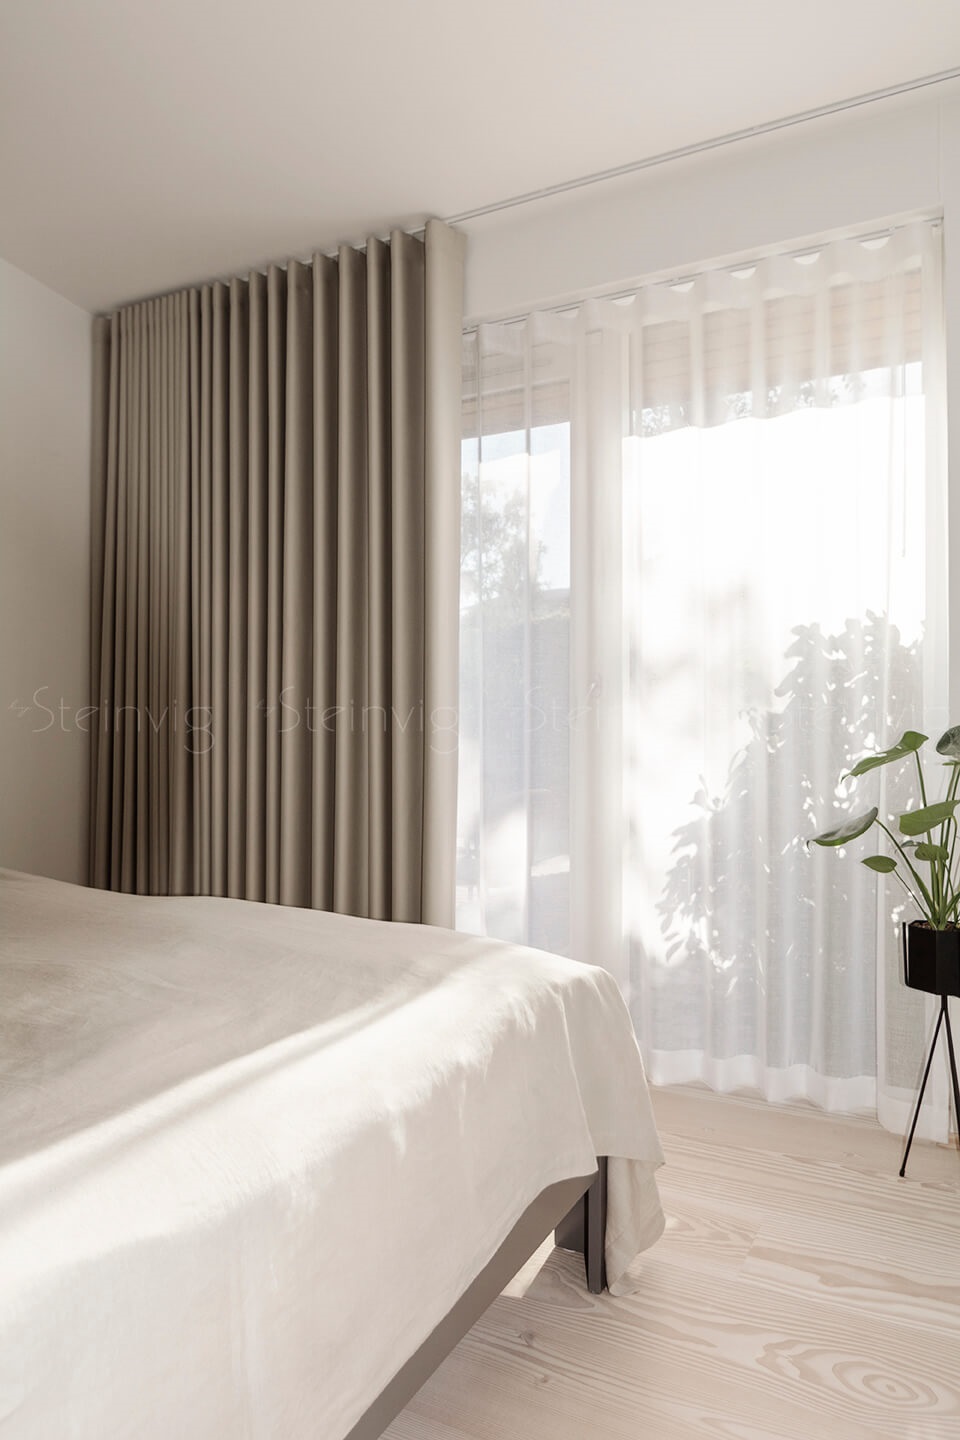 Søhuset-soveværelse-design-gardiner-bysteinvig-indretning